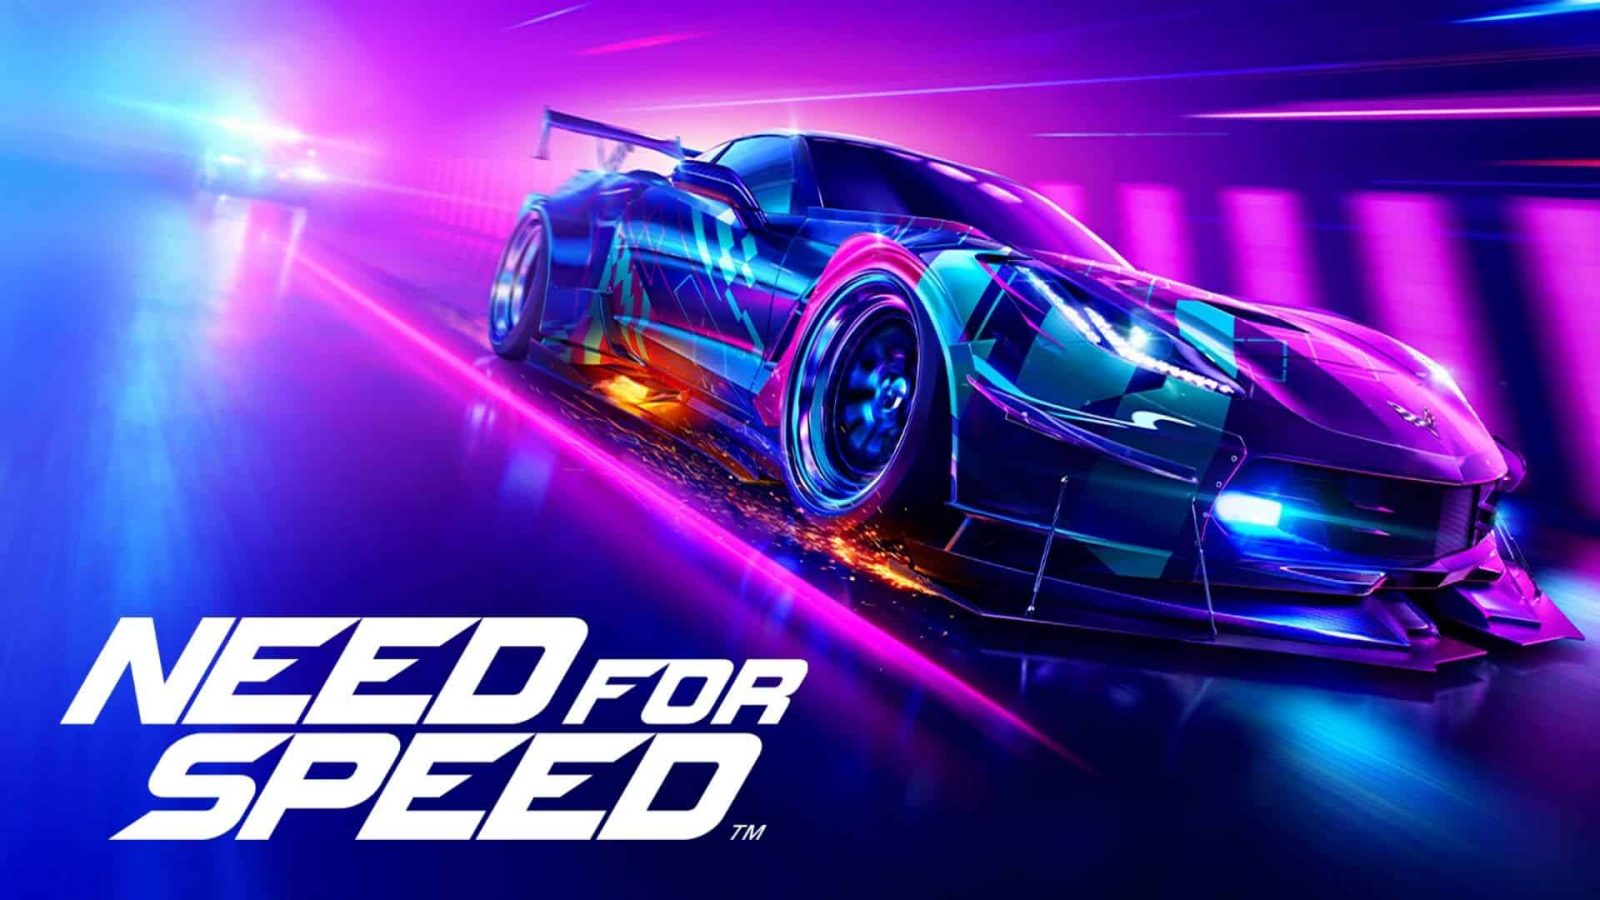 دليل شامل عن ألعاب Need for Speed أسرار وحل مشاكل وميزات والمزيد!